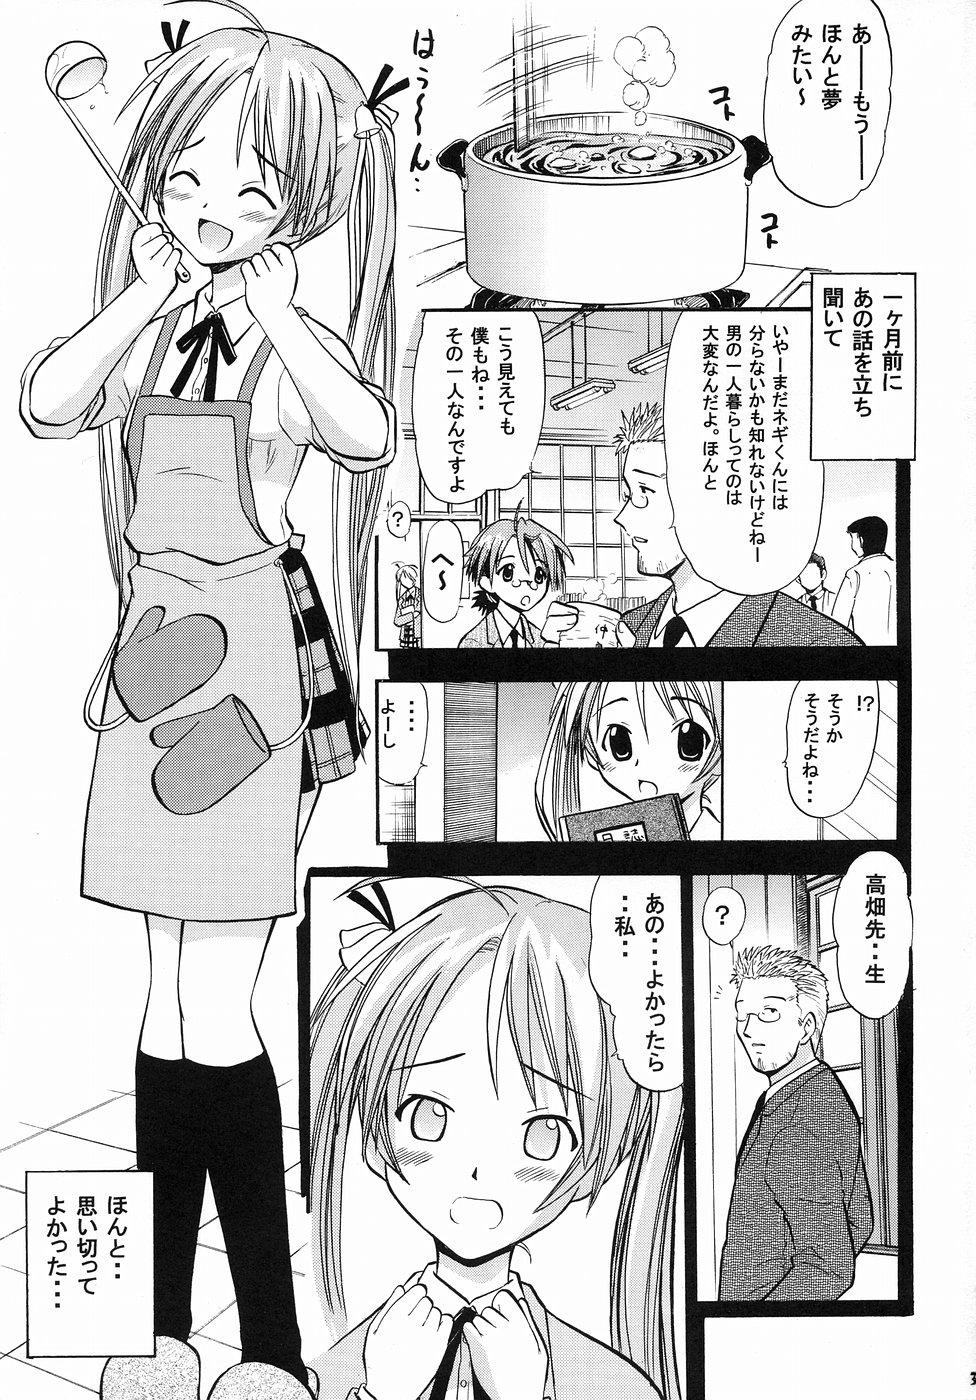 Blowjob Porn Asuna no Koi Suru Heart - Mahou sensei negima Huge Boobs - Page 2